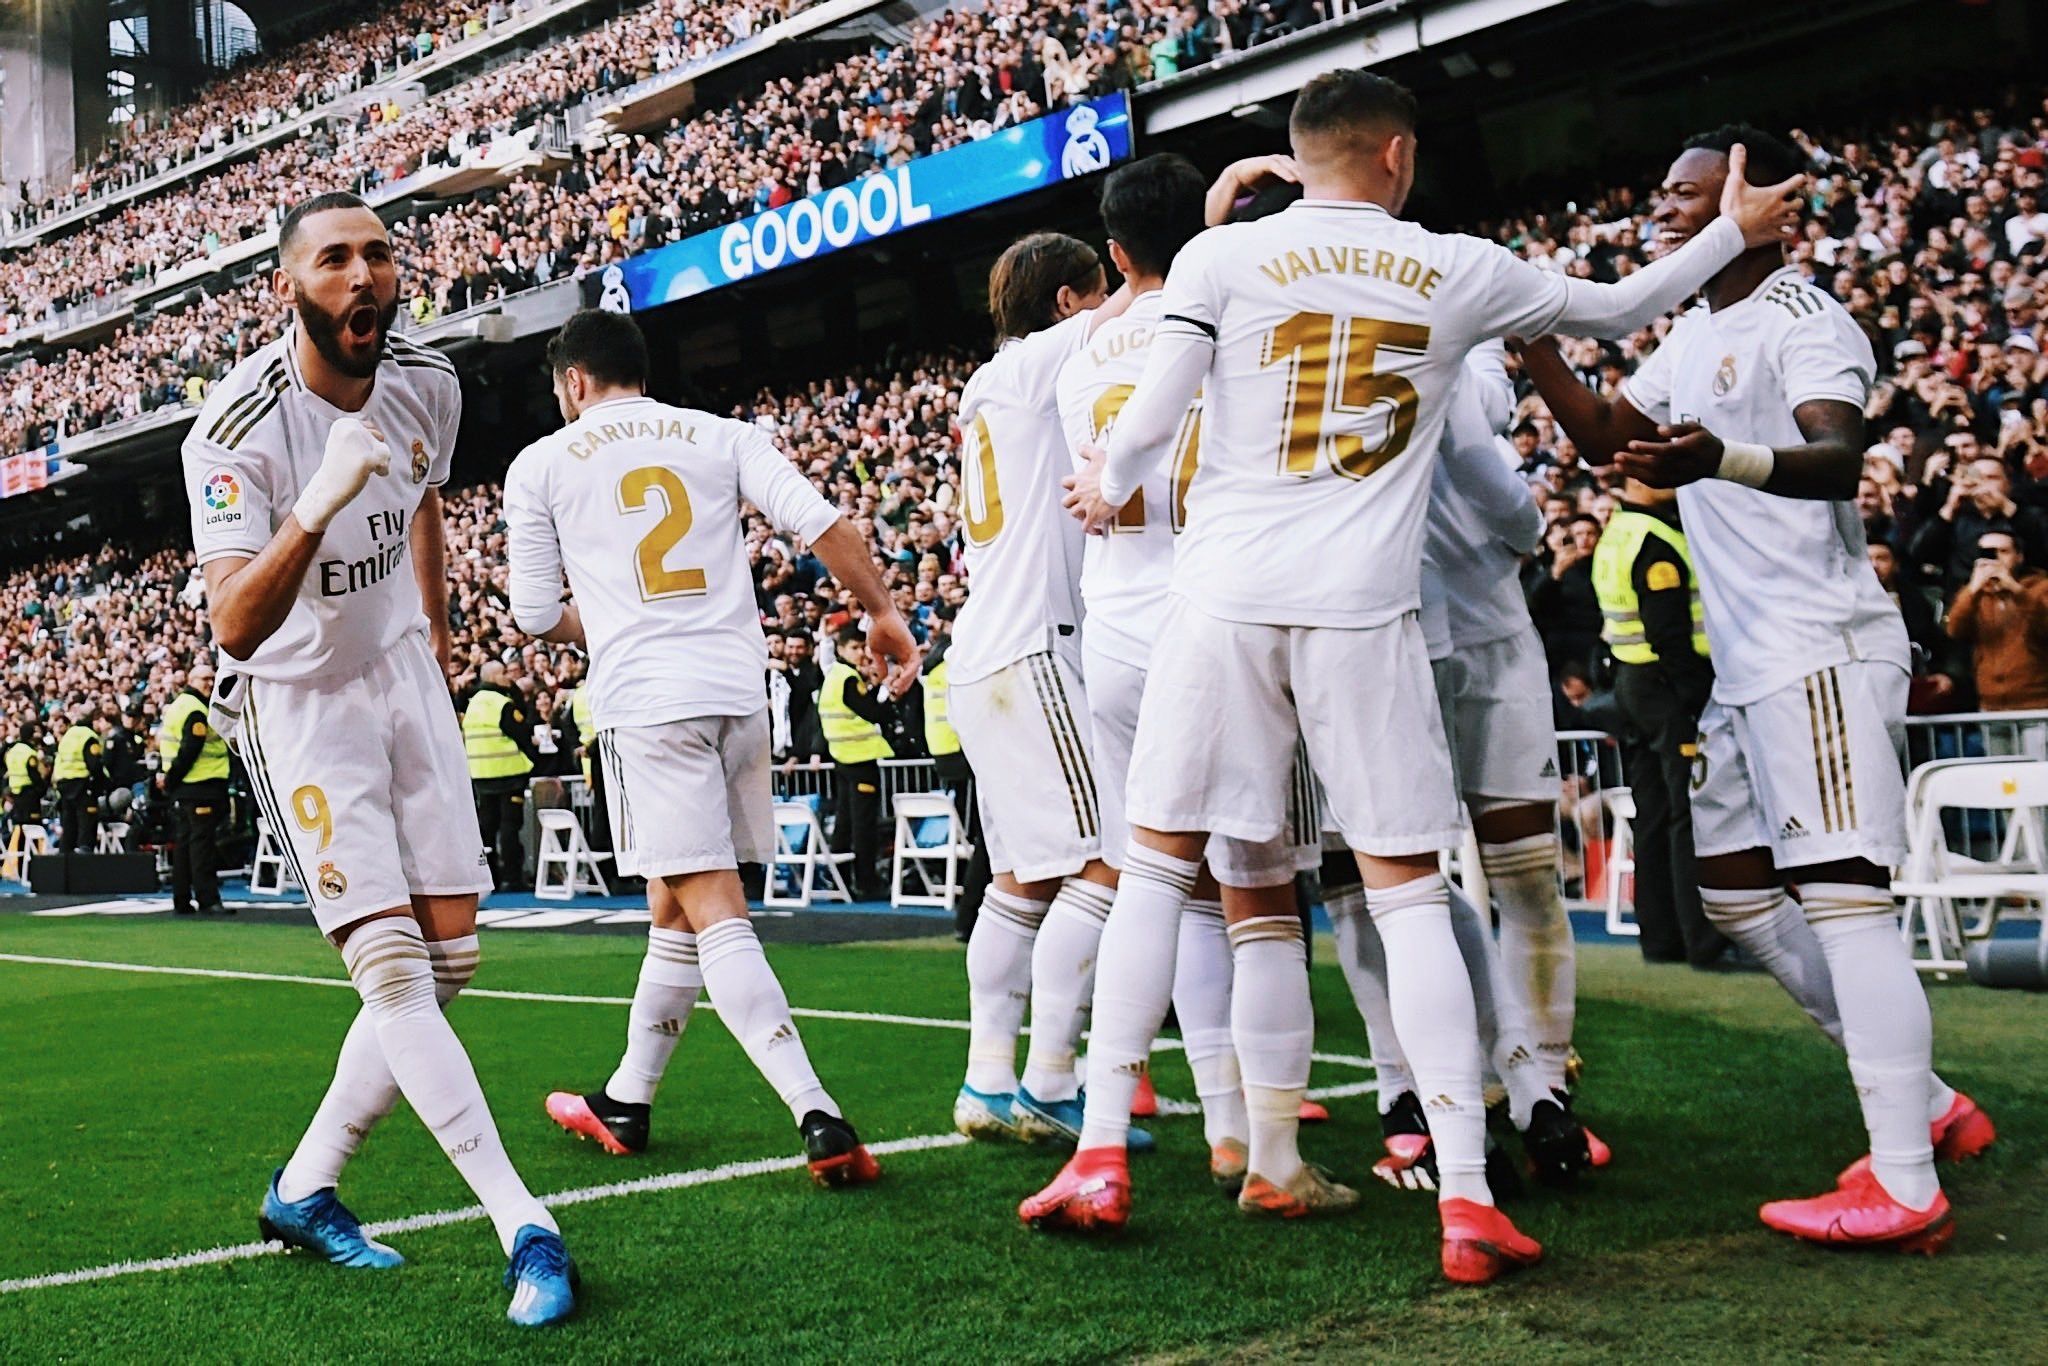 Мадридский «Реал» стал лучшим клубом в европейских топ-лигах по количеству чемпионств